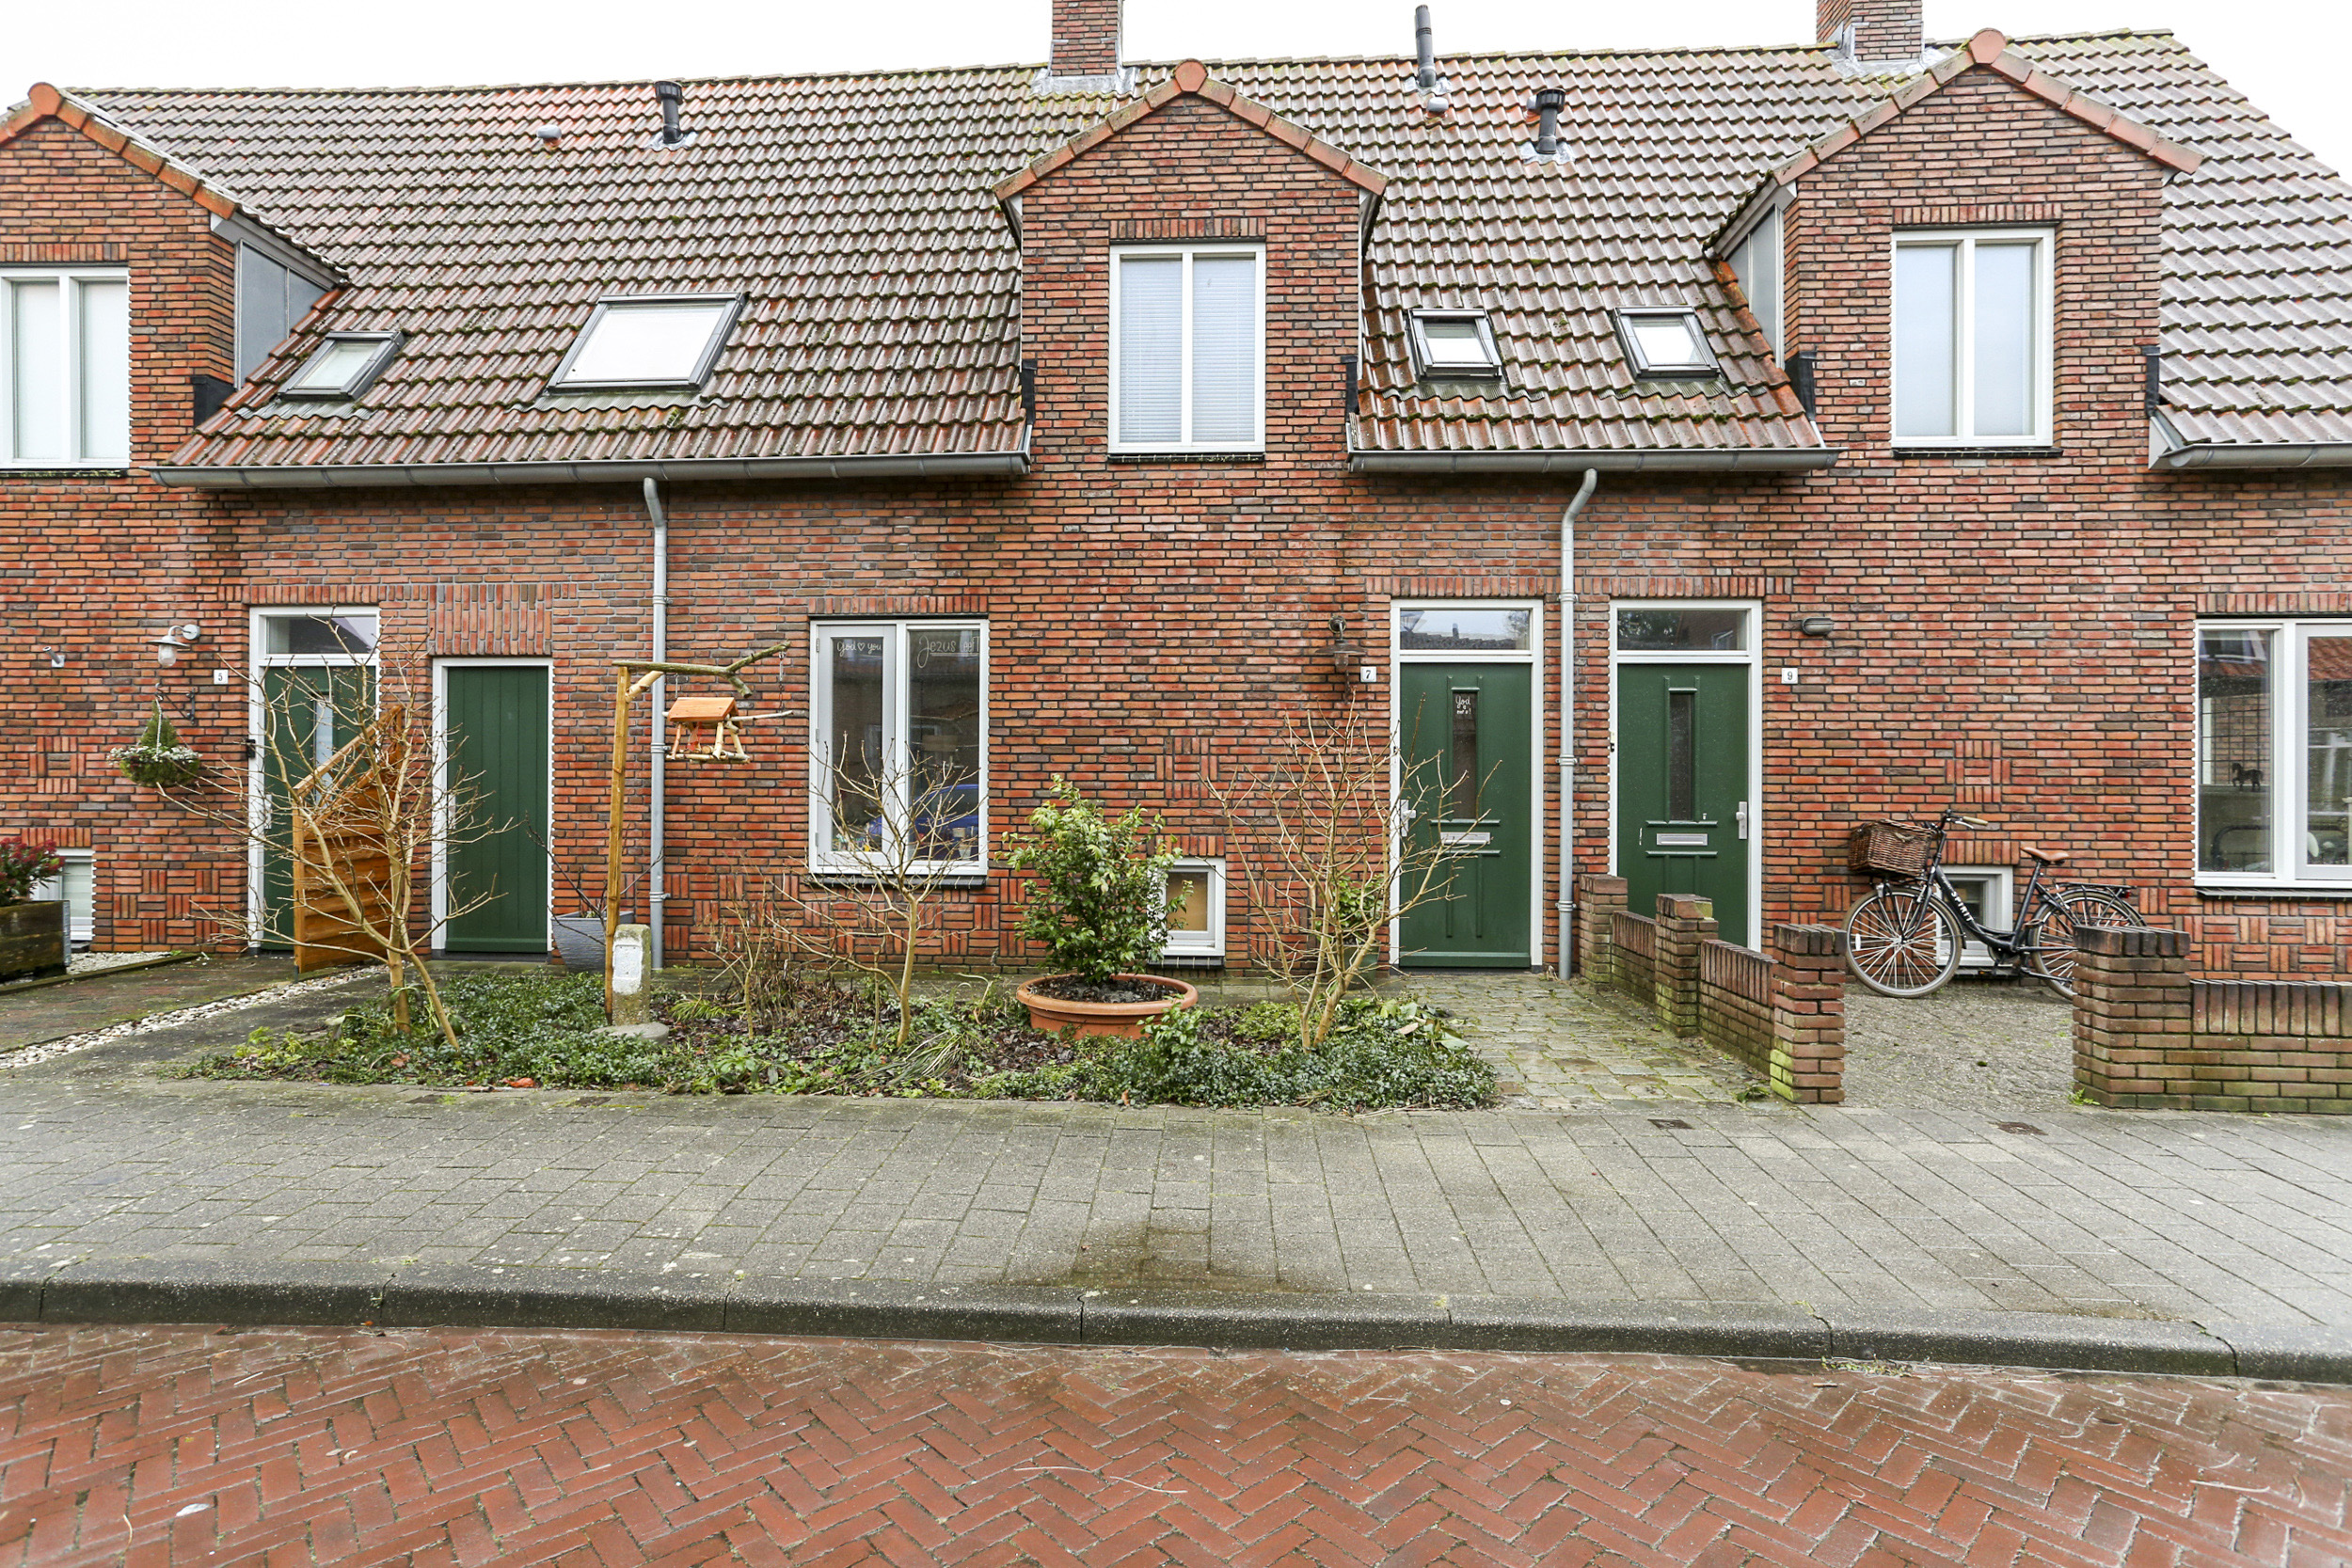 Irenestraat 7, 4941 JN Raamsdonksveer, Nederland